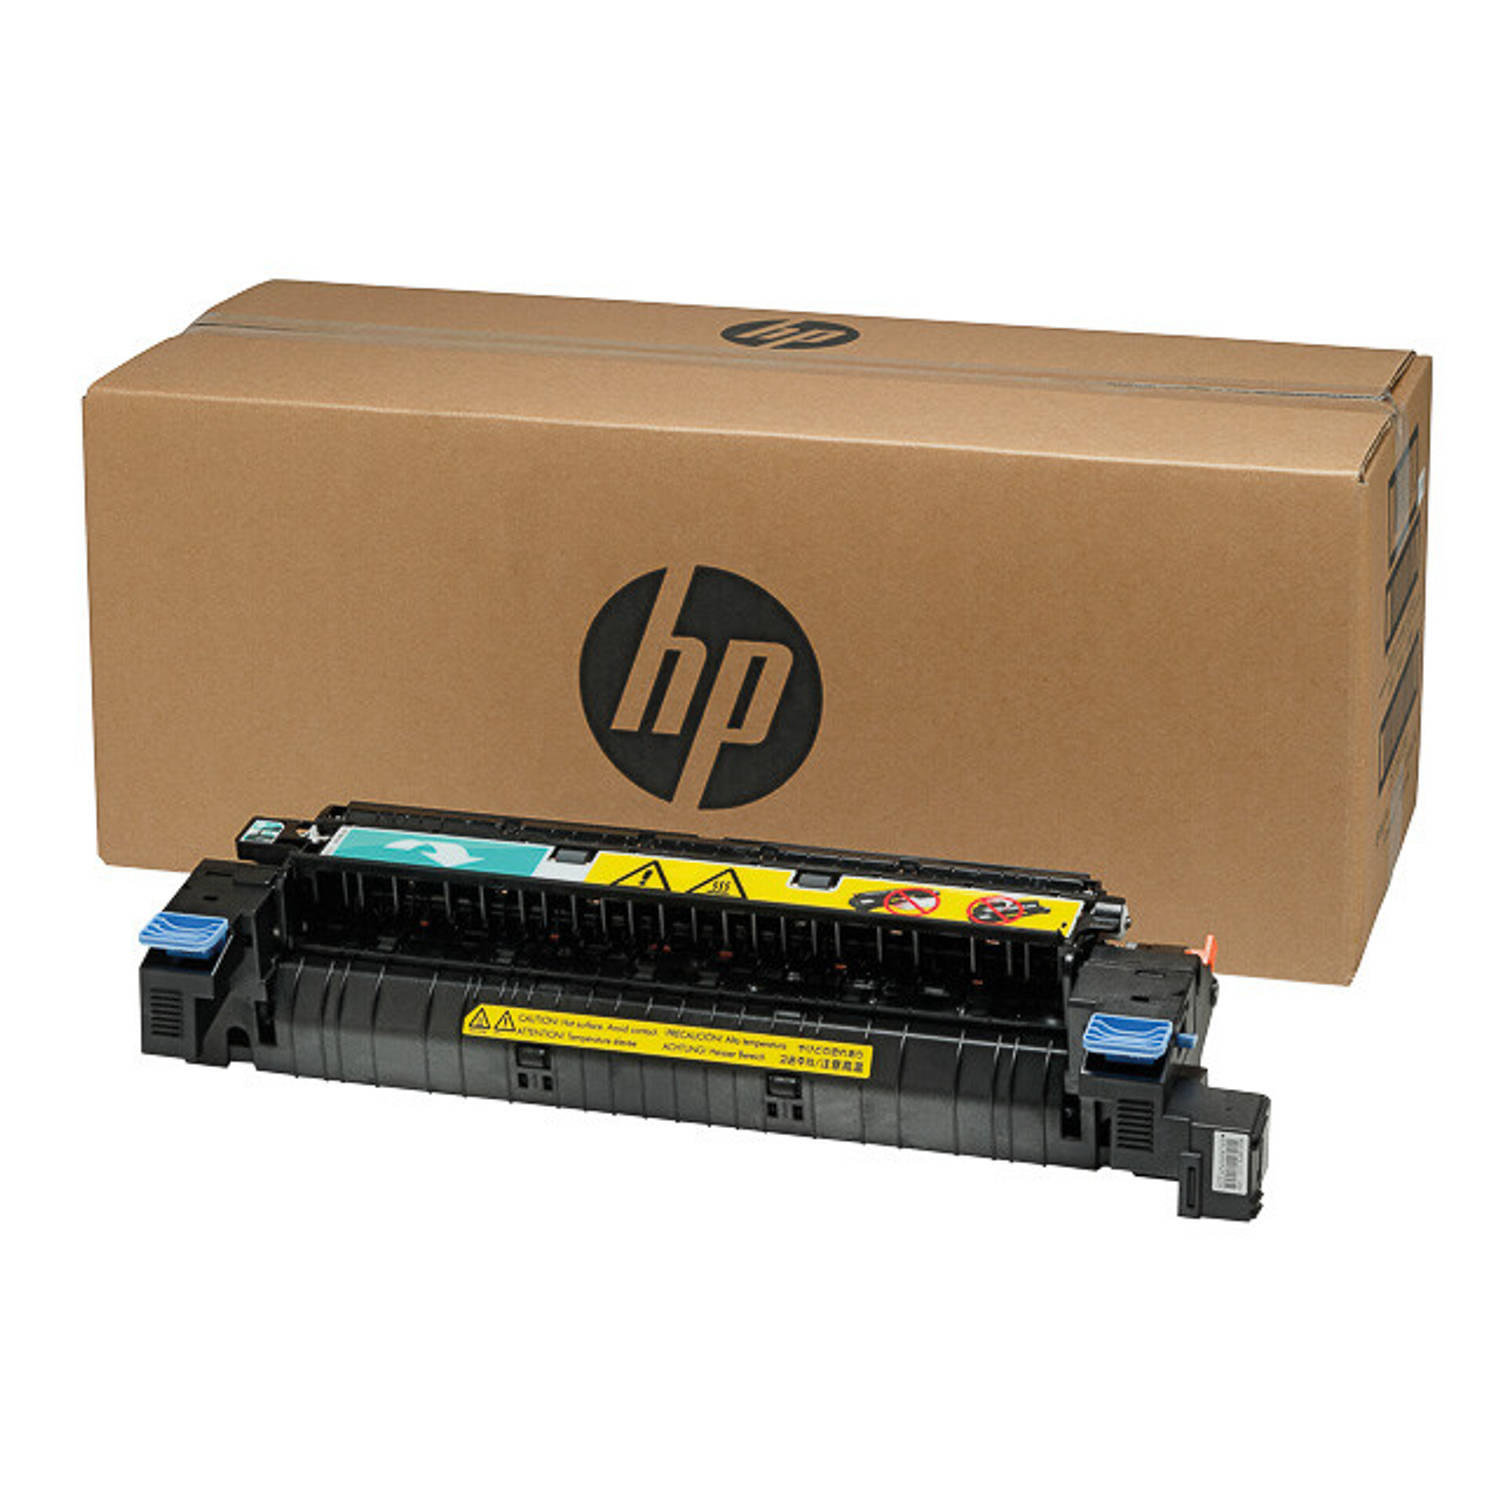 HP HP LaserJet CE515A 220V Maintenance Kit for HP LaserJet 600 M601-M602- (CE515A)